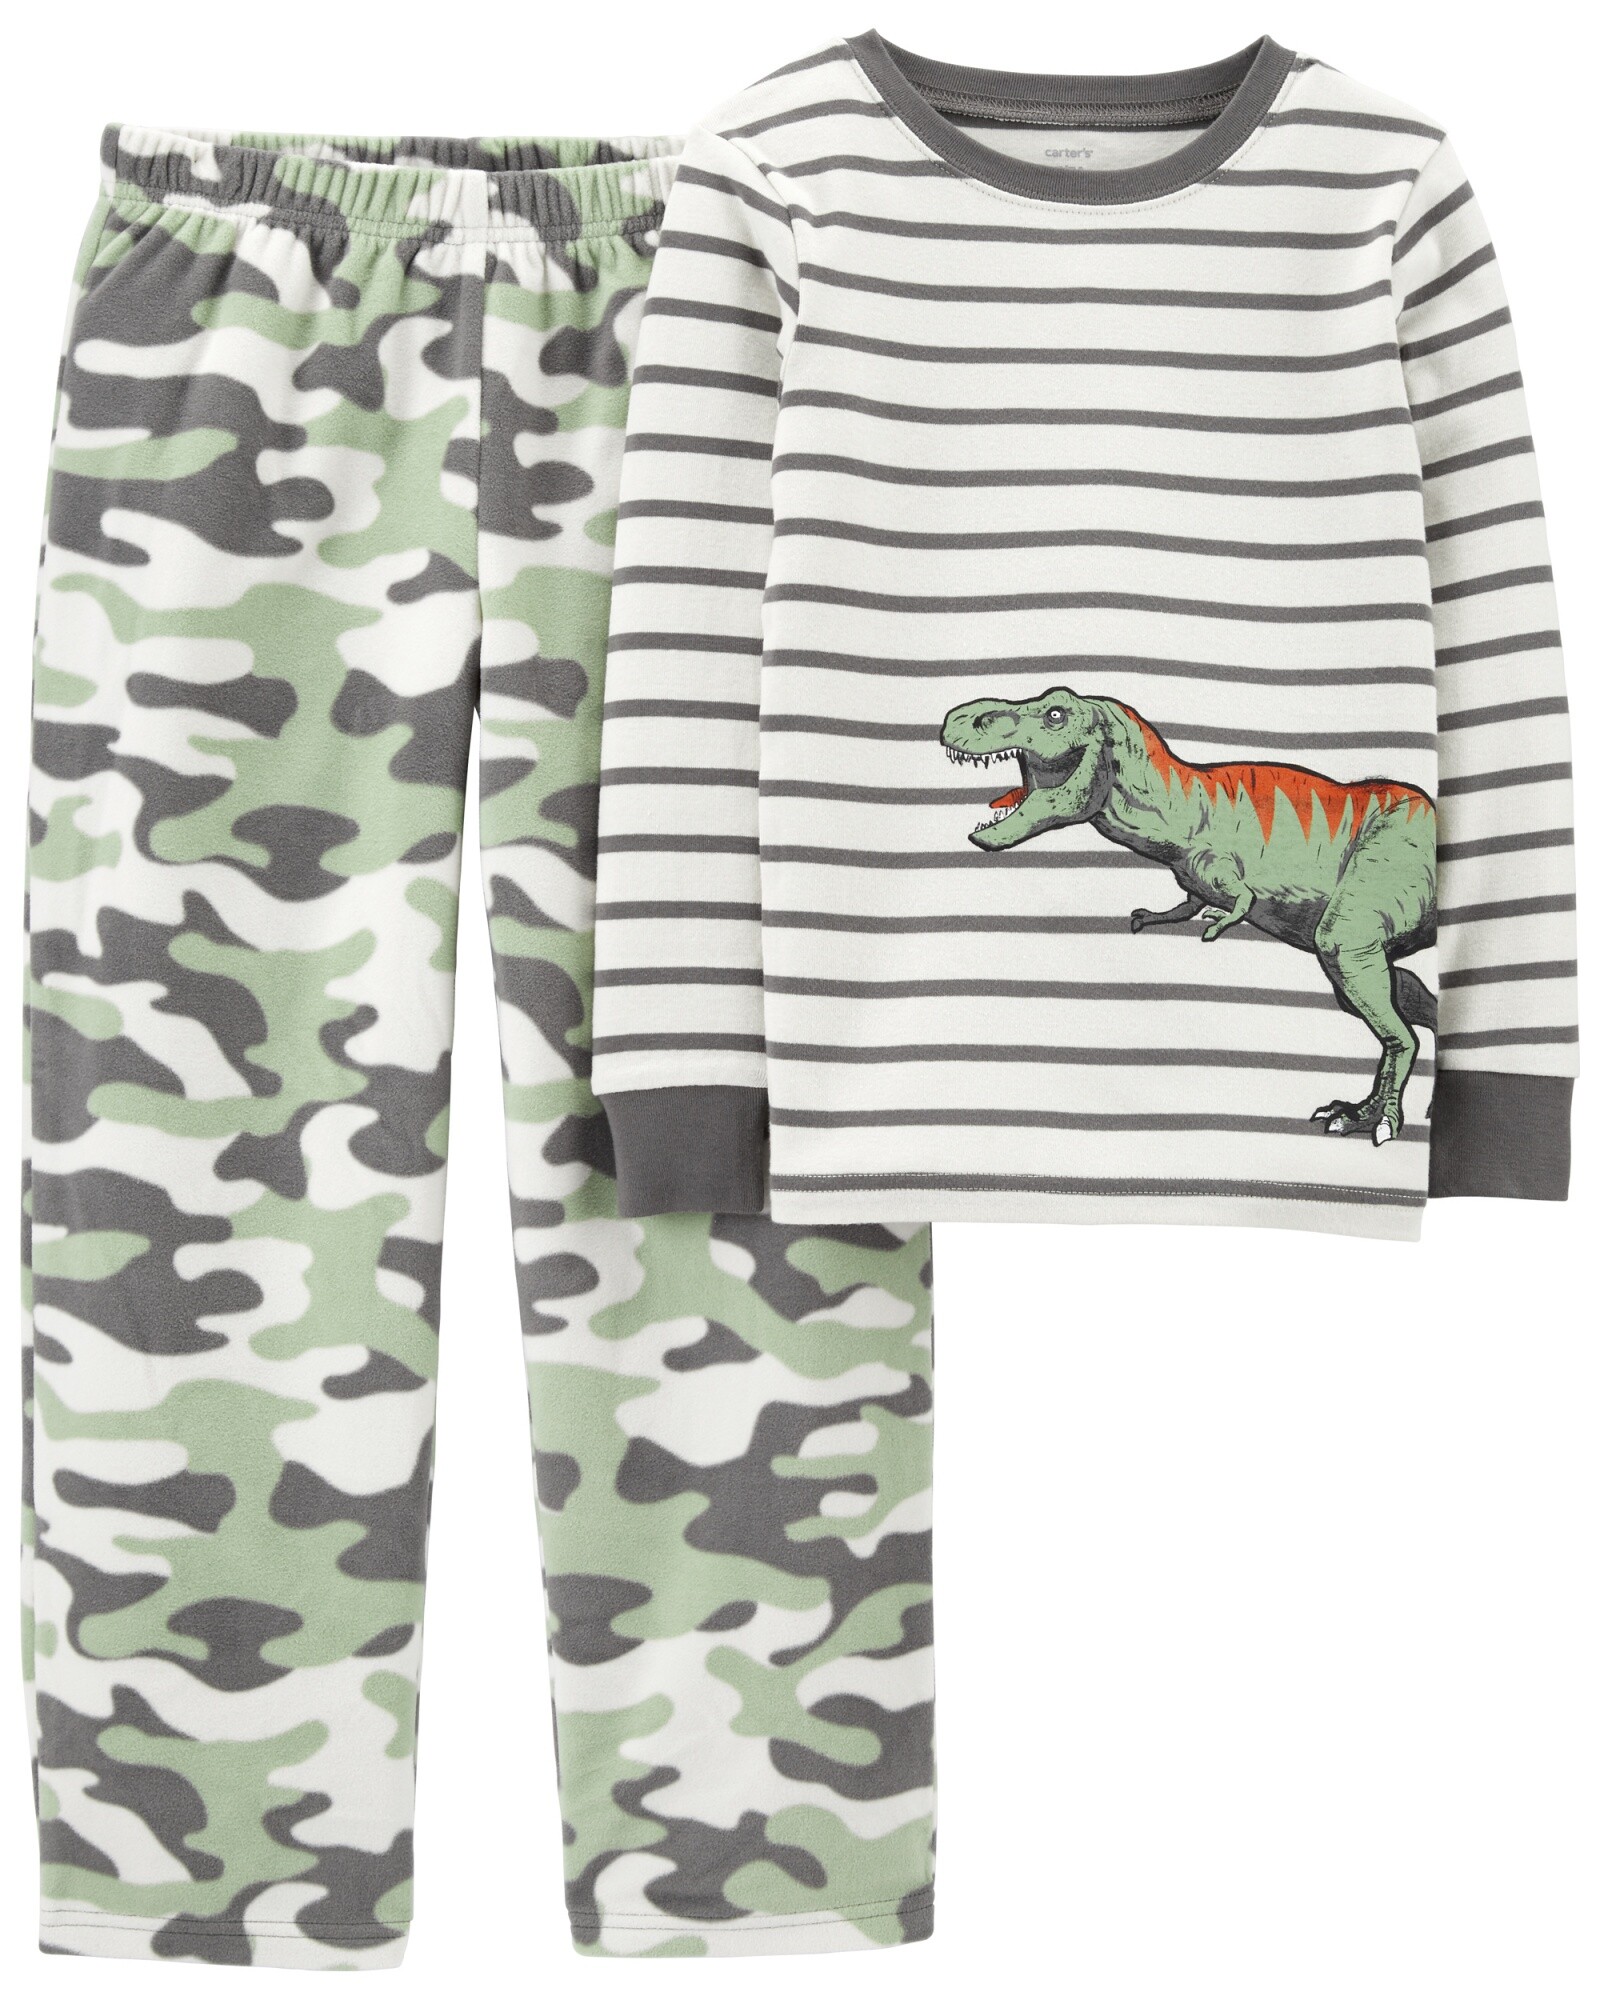 Pijama dos piezas pantalón micropolar y remera algodón, diseño dinosaurio Sin color